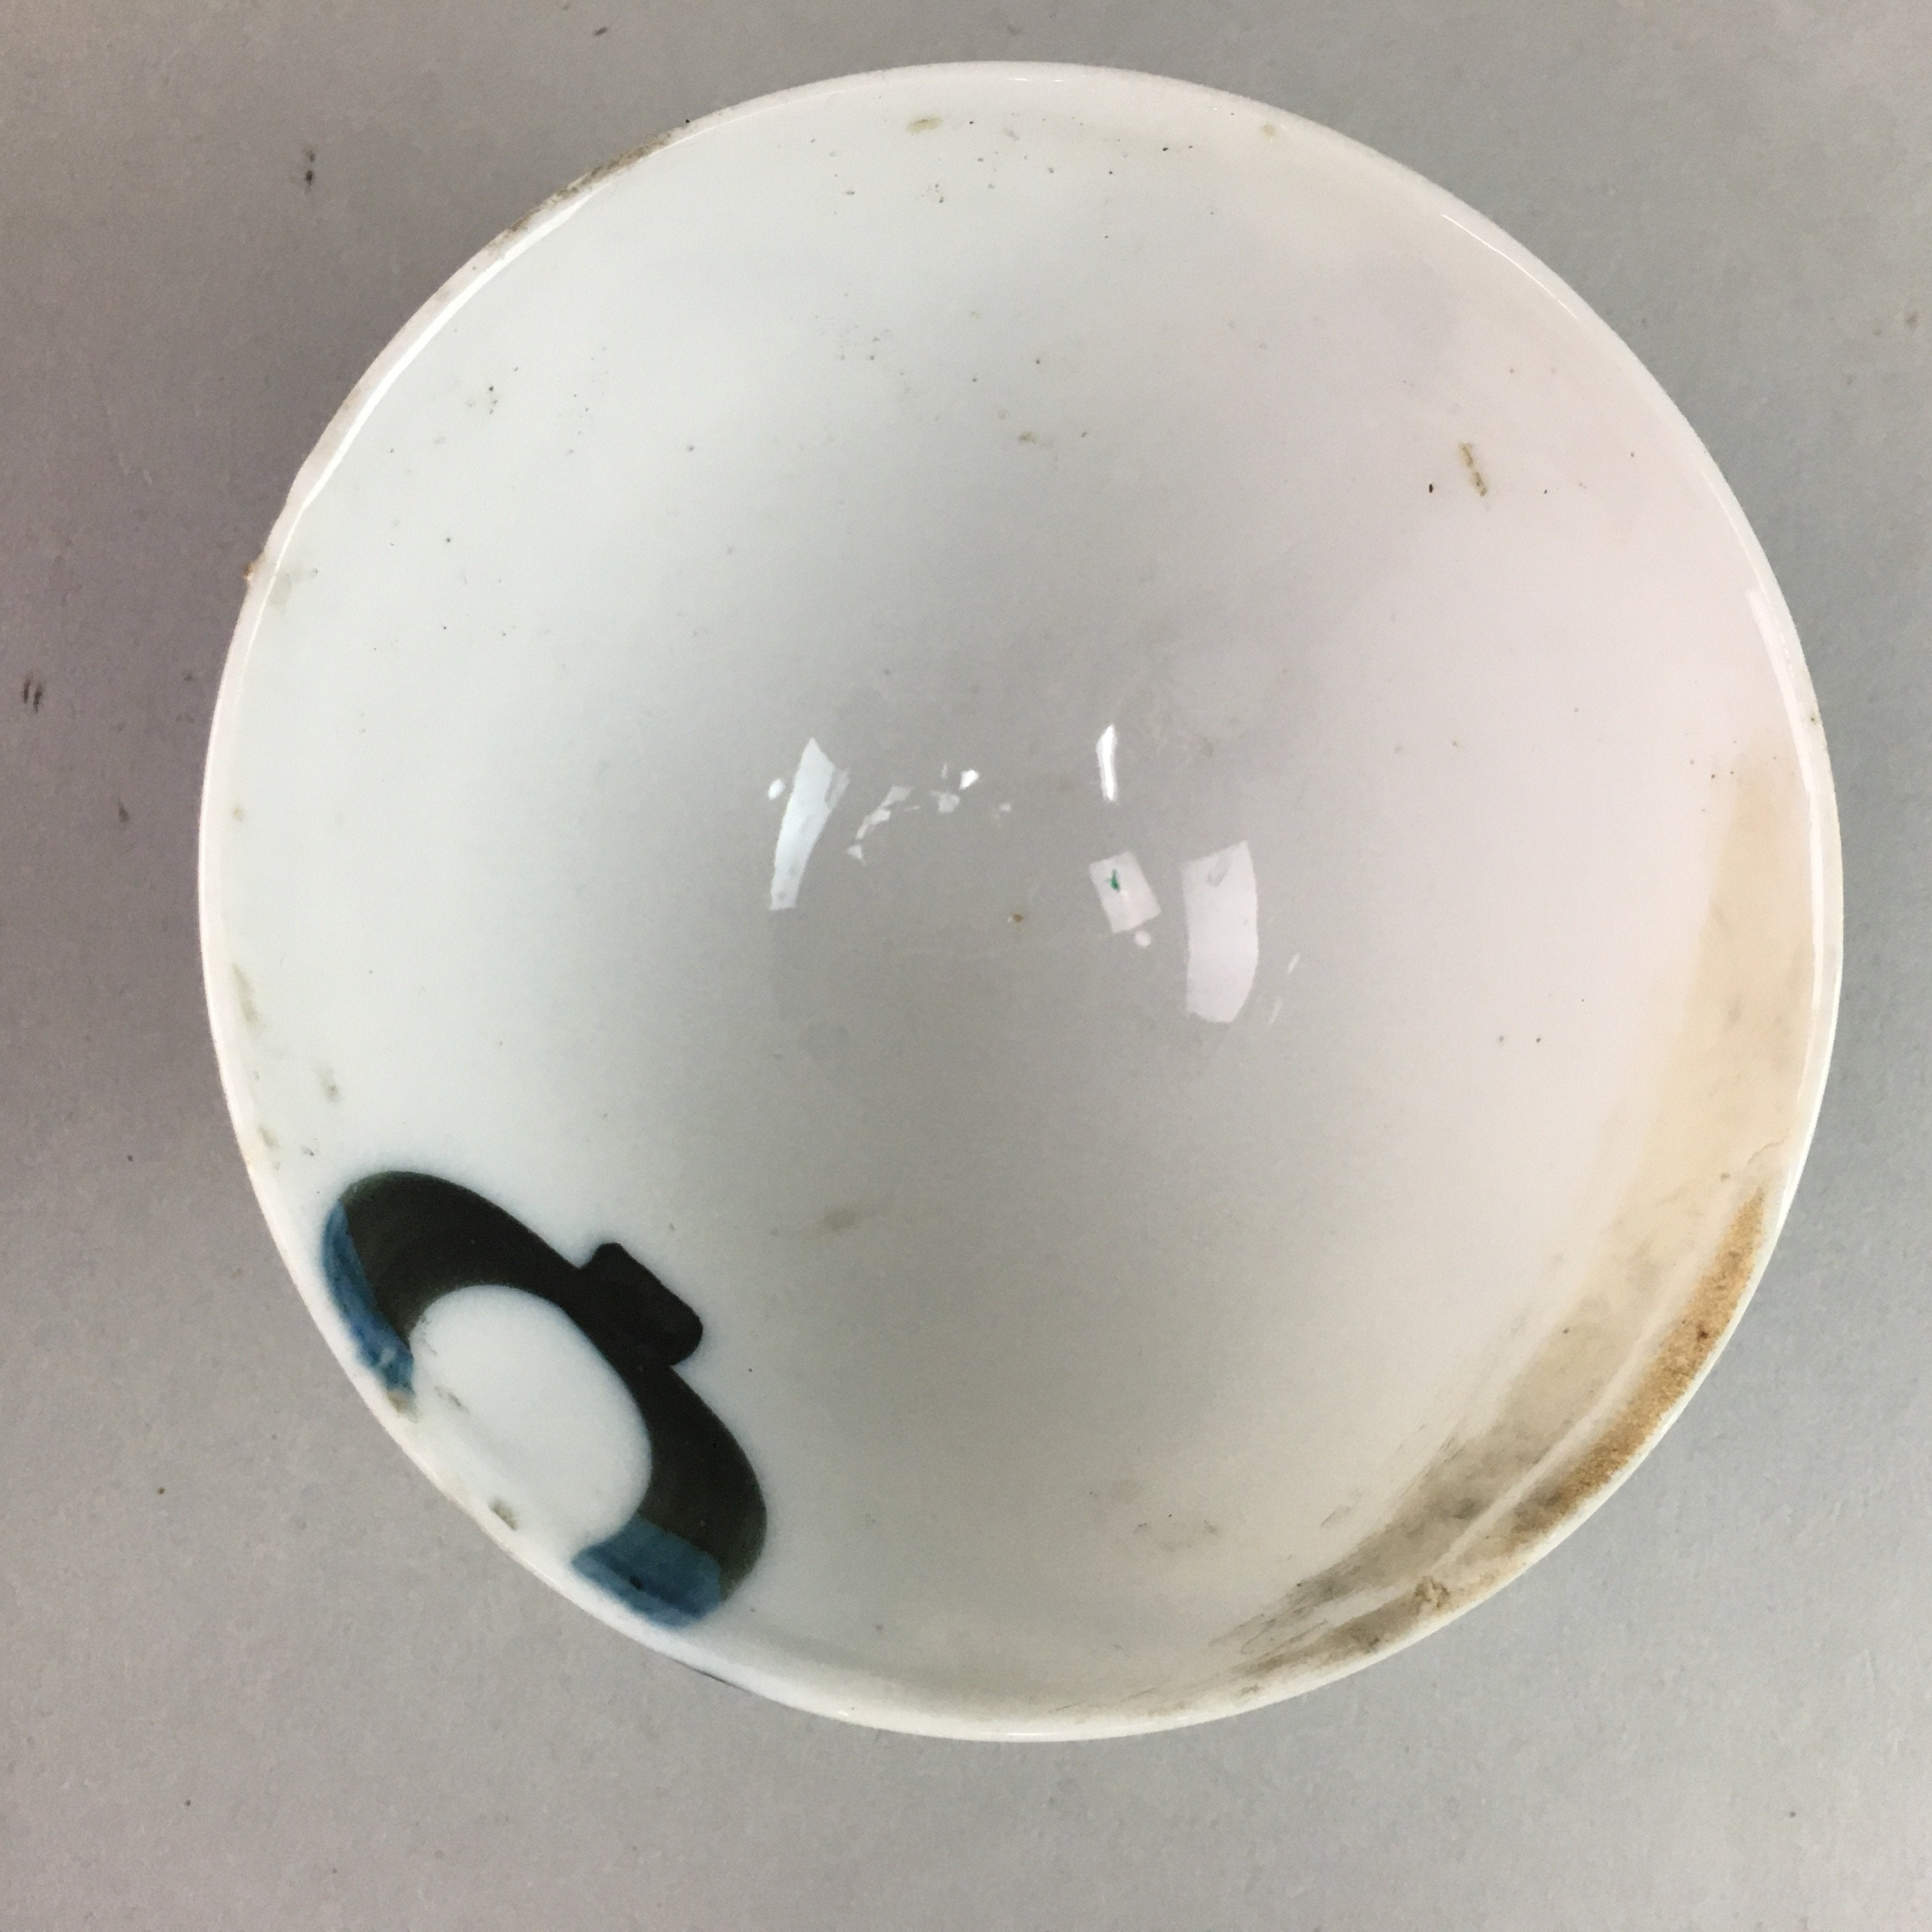 Japanese Porcelain Rice Bowl Vtg Chawan Blue White Gourd Sometsuke PP243